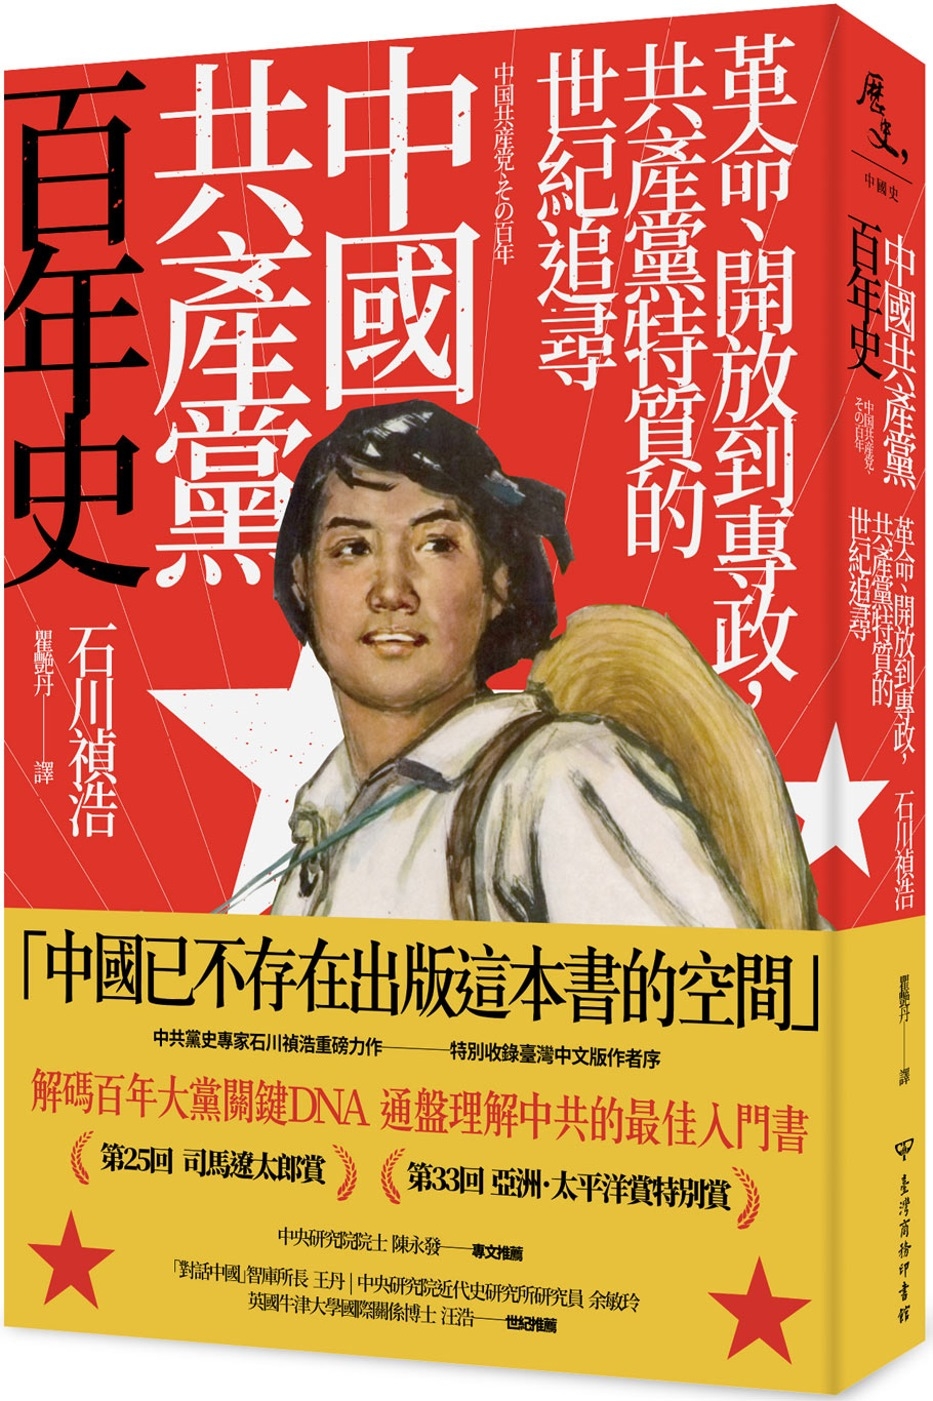 中國共產黨百年史：革命、開放到專政，共產黨特質的世紀追尋　　　　　　